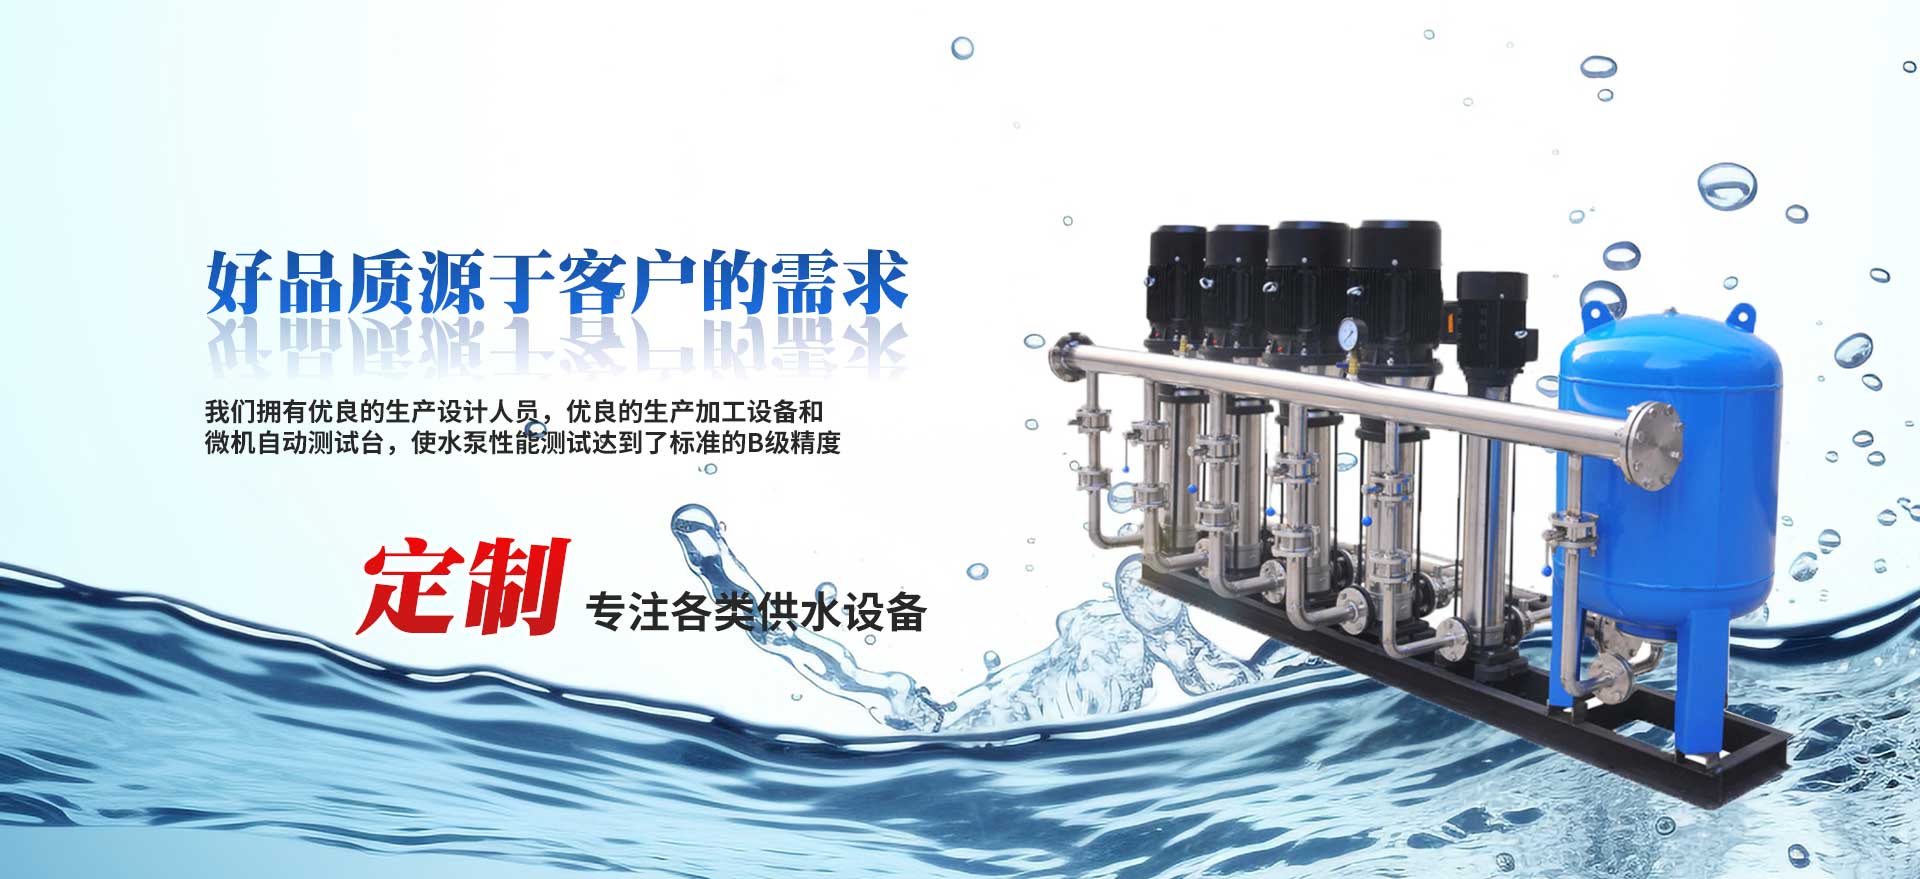 勃亚特水泵有限公司是一家集科研、生产、销售、服务于一体的大型特种水泵生产基地。